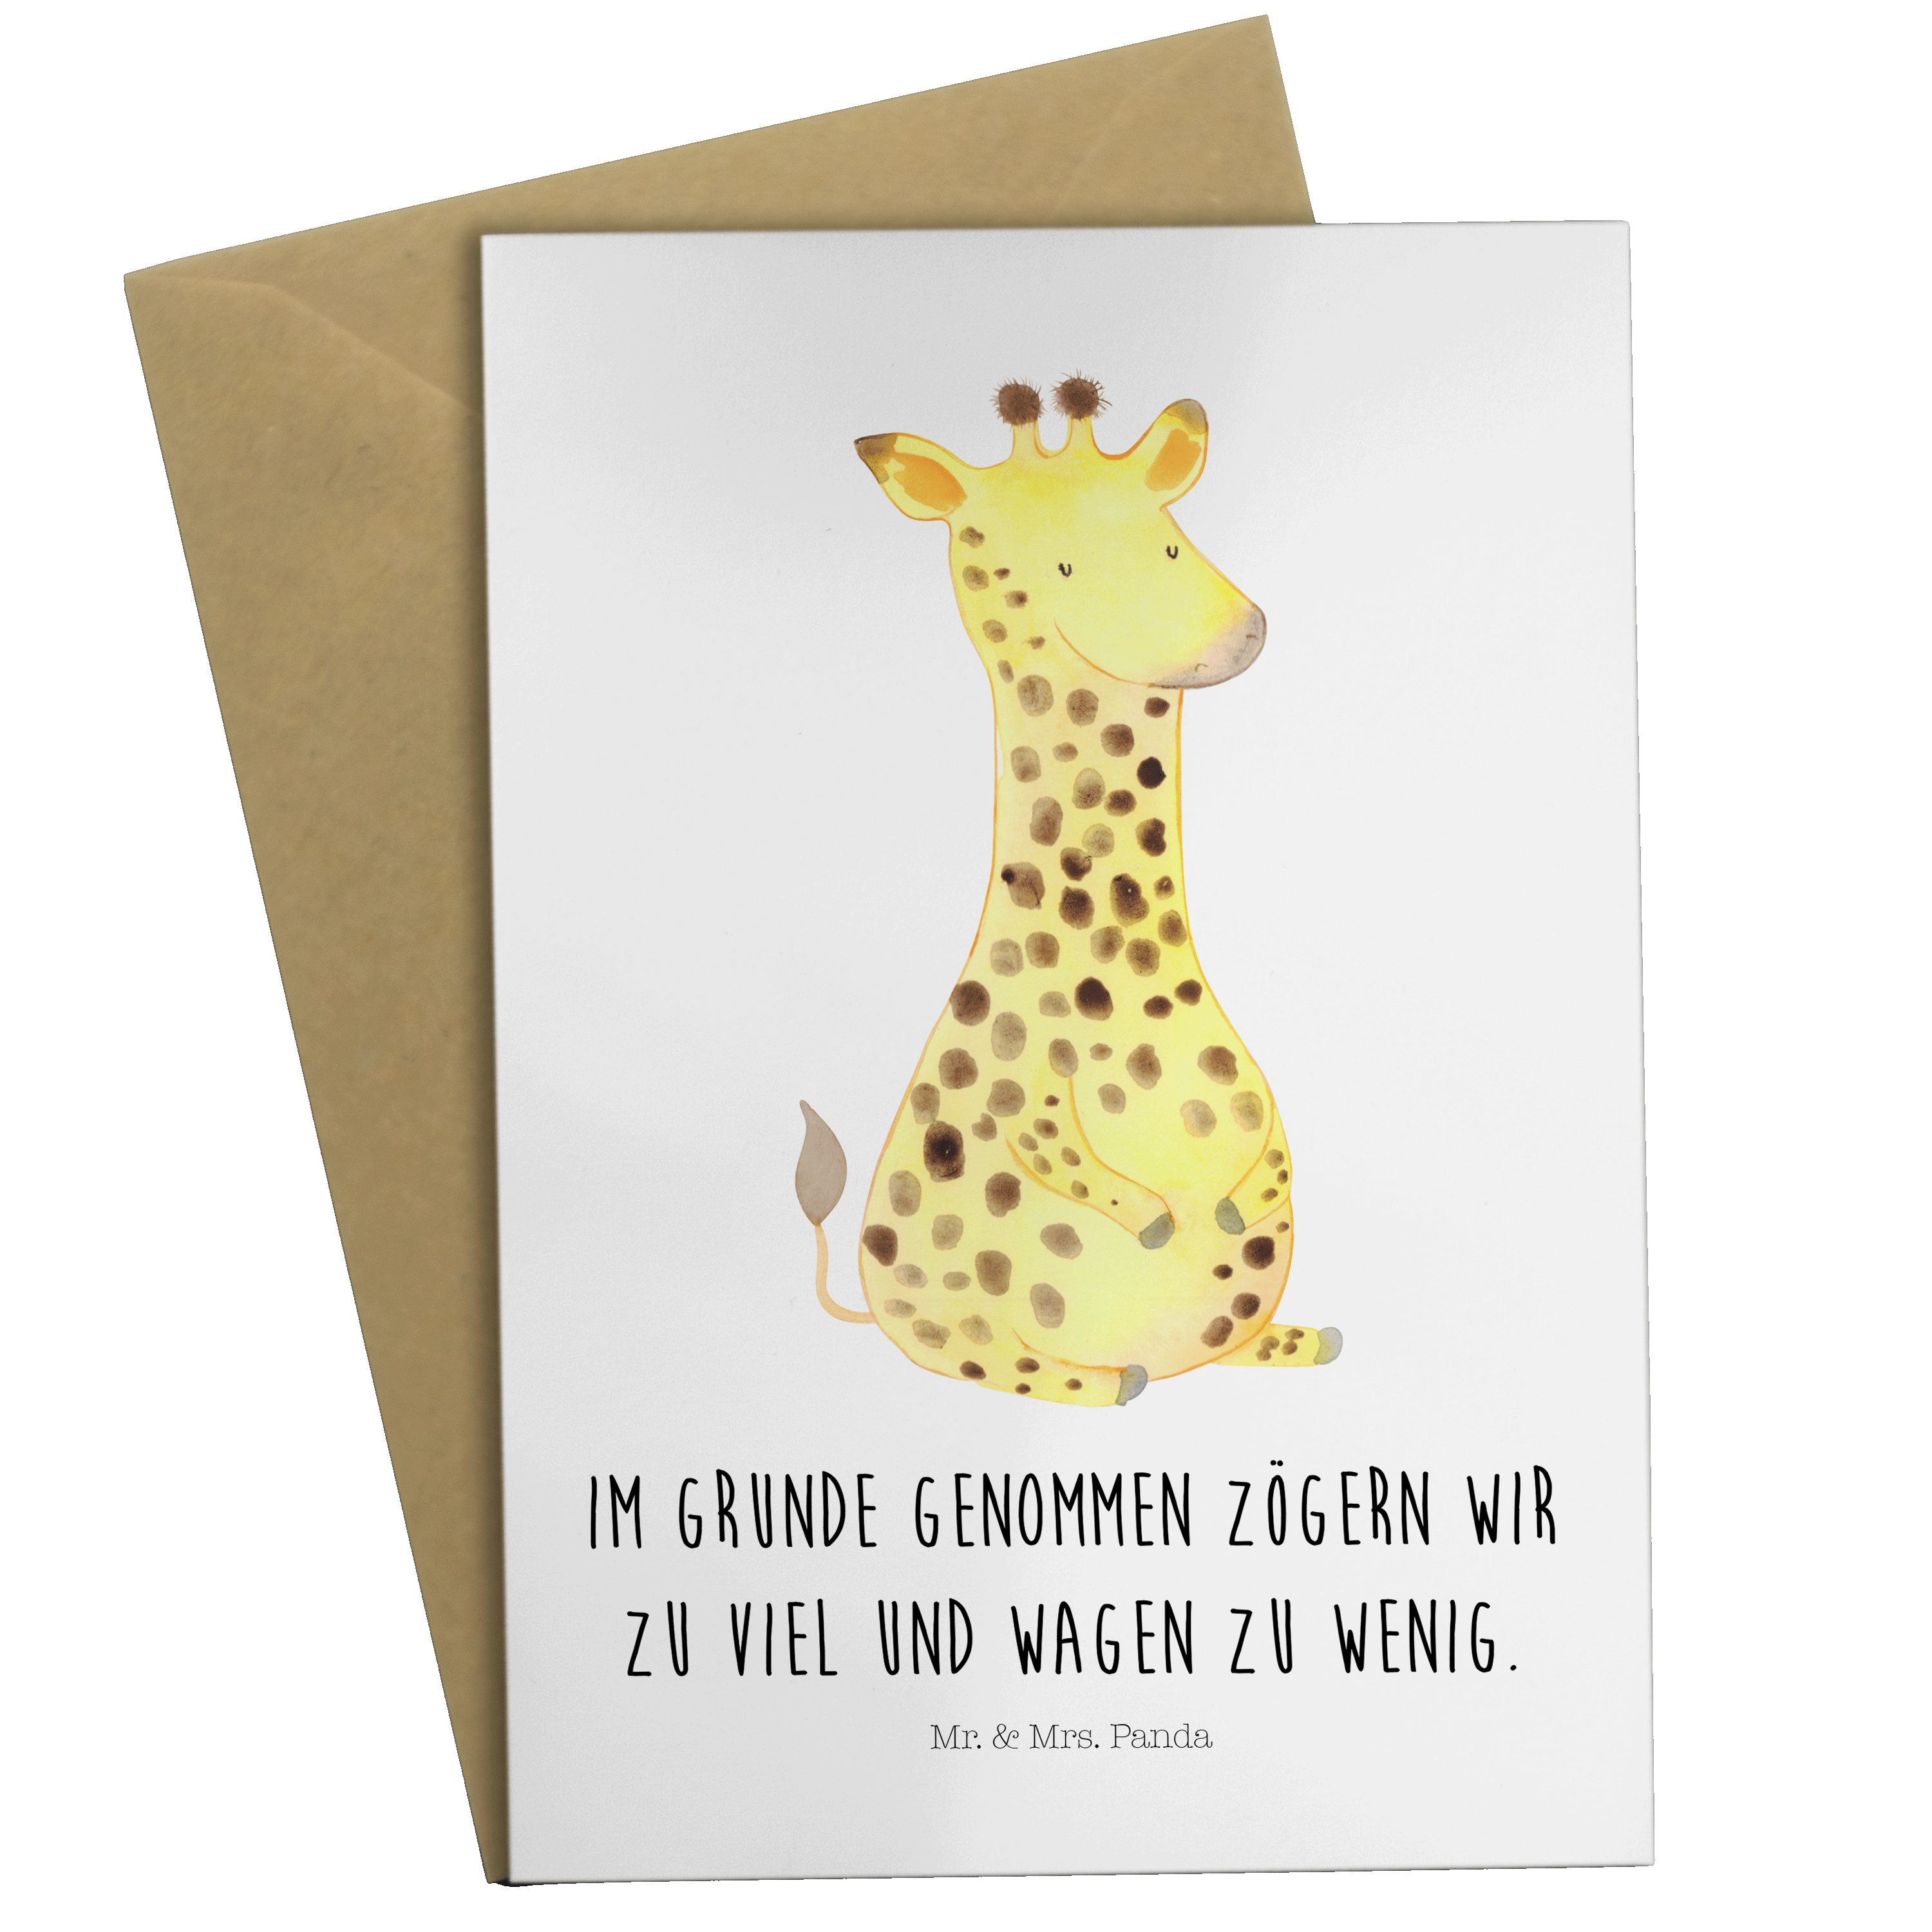 Mr. & Mrs. Panda Grußkarte Giraffe Zufrieden - Weiß - Geschenk, Afrika, Geburtstagskarte, Einlad